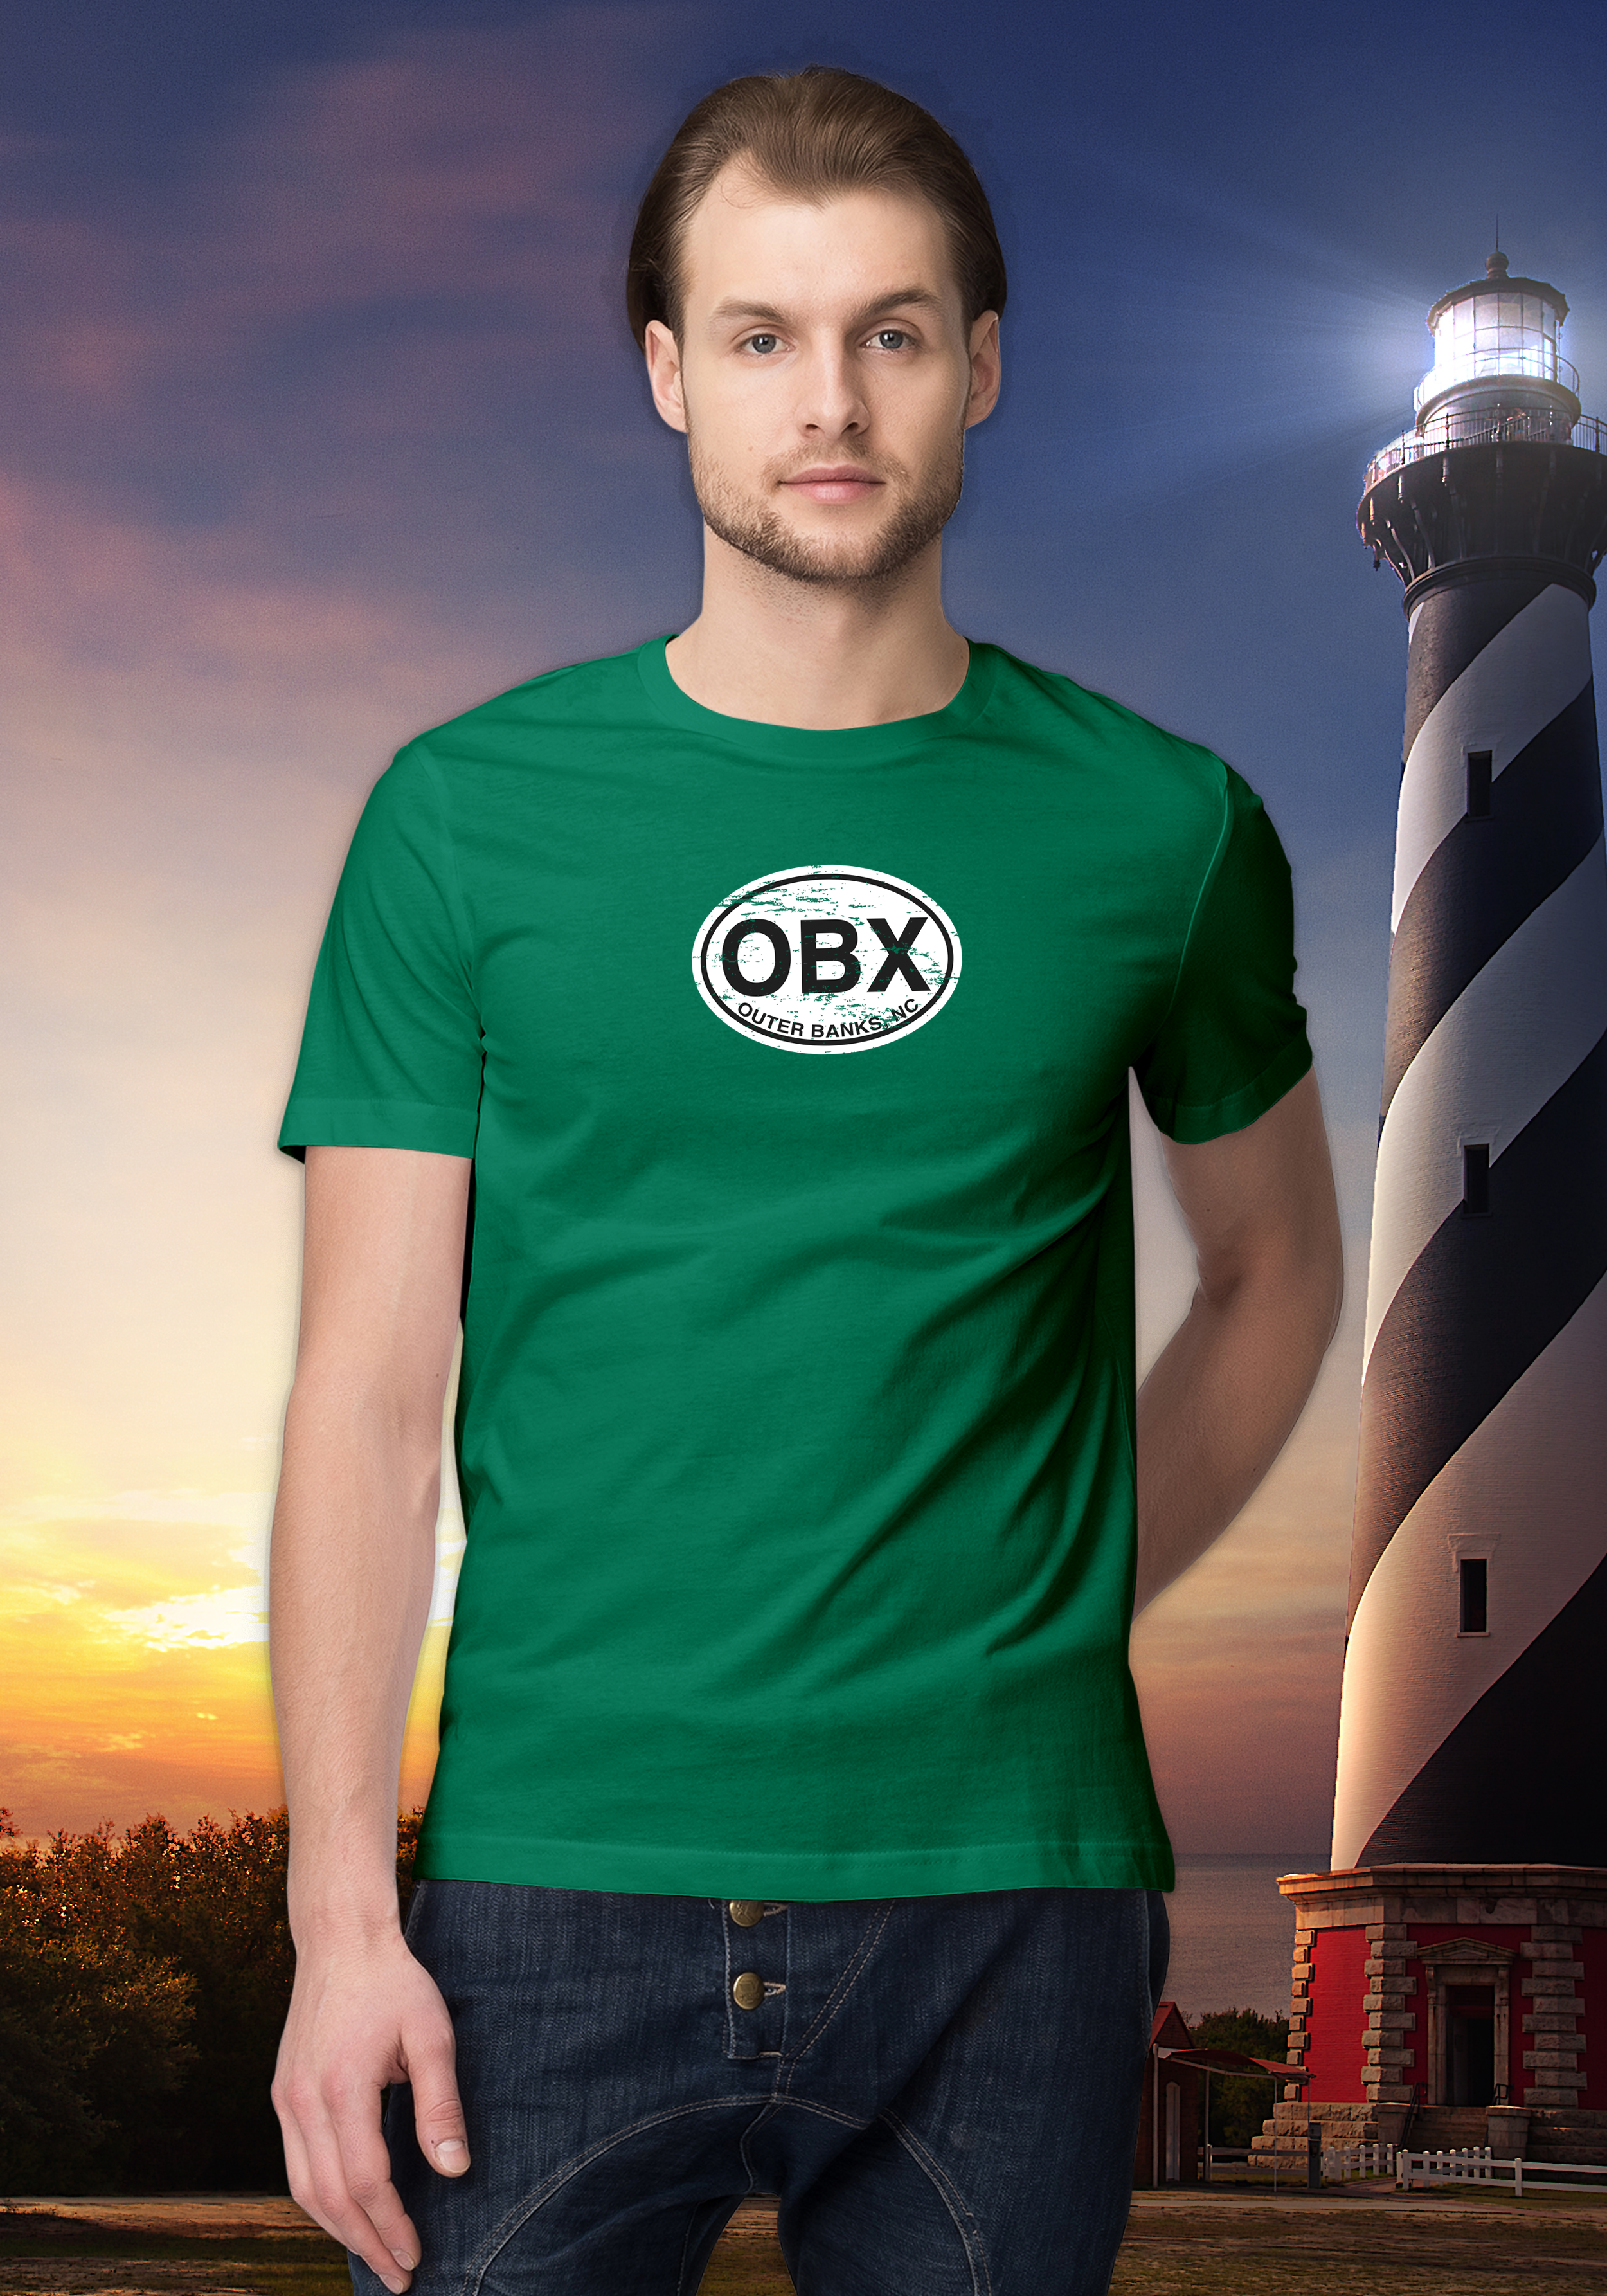 Outer Banks Men's Classic T-Shirt Souvenir Gift - My Destination Location